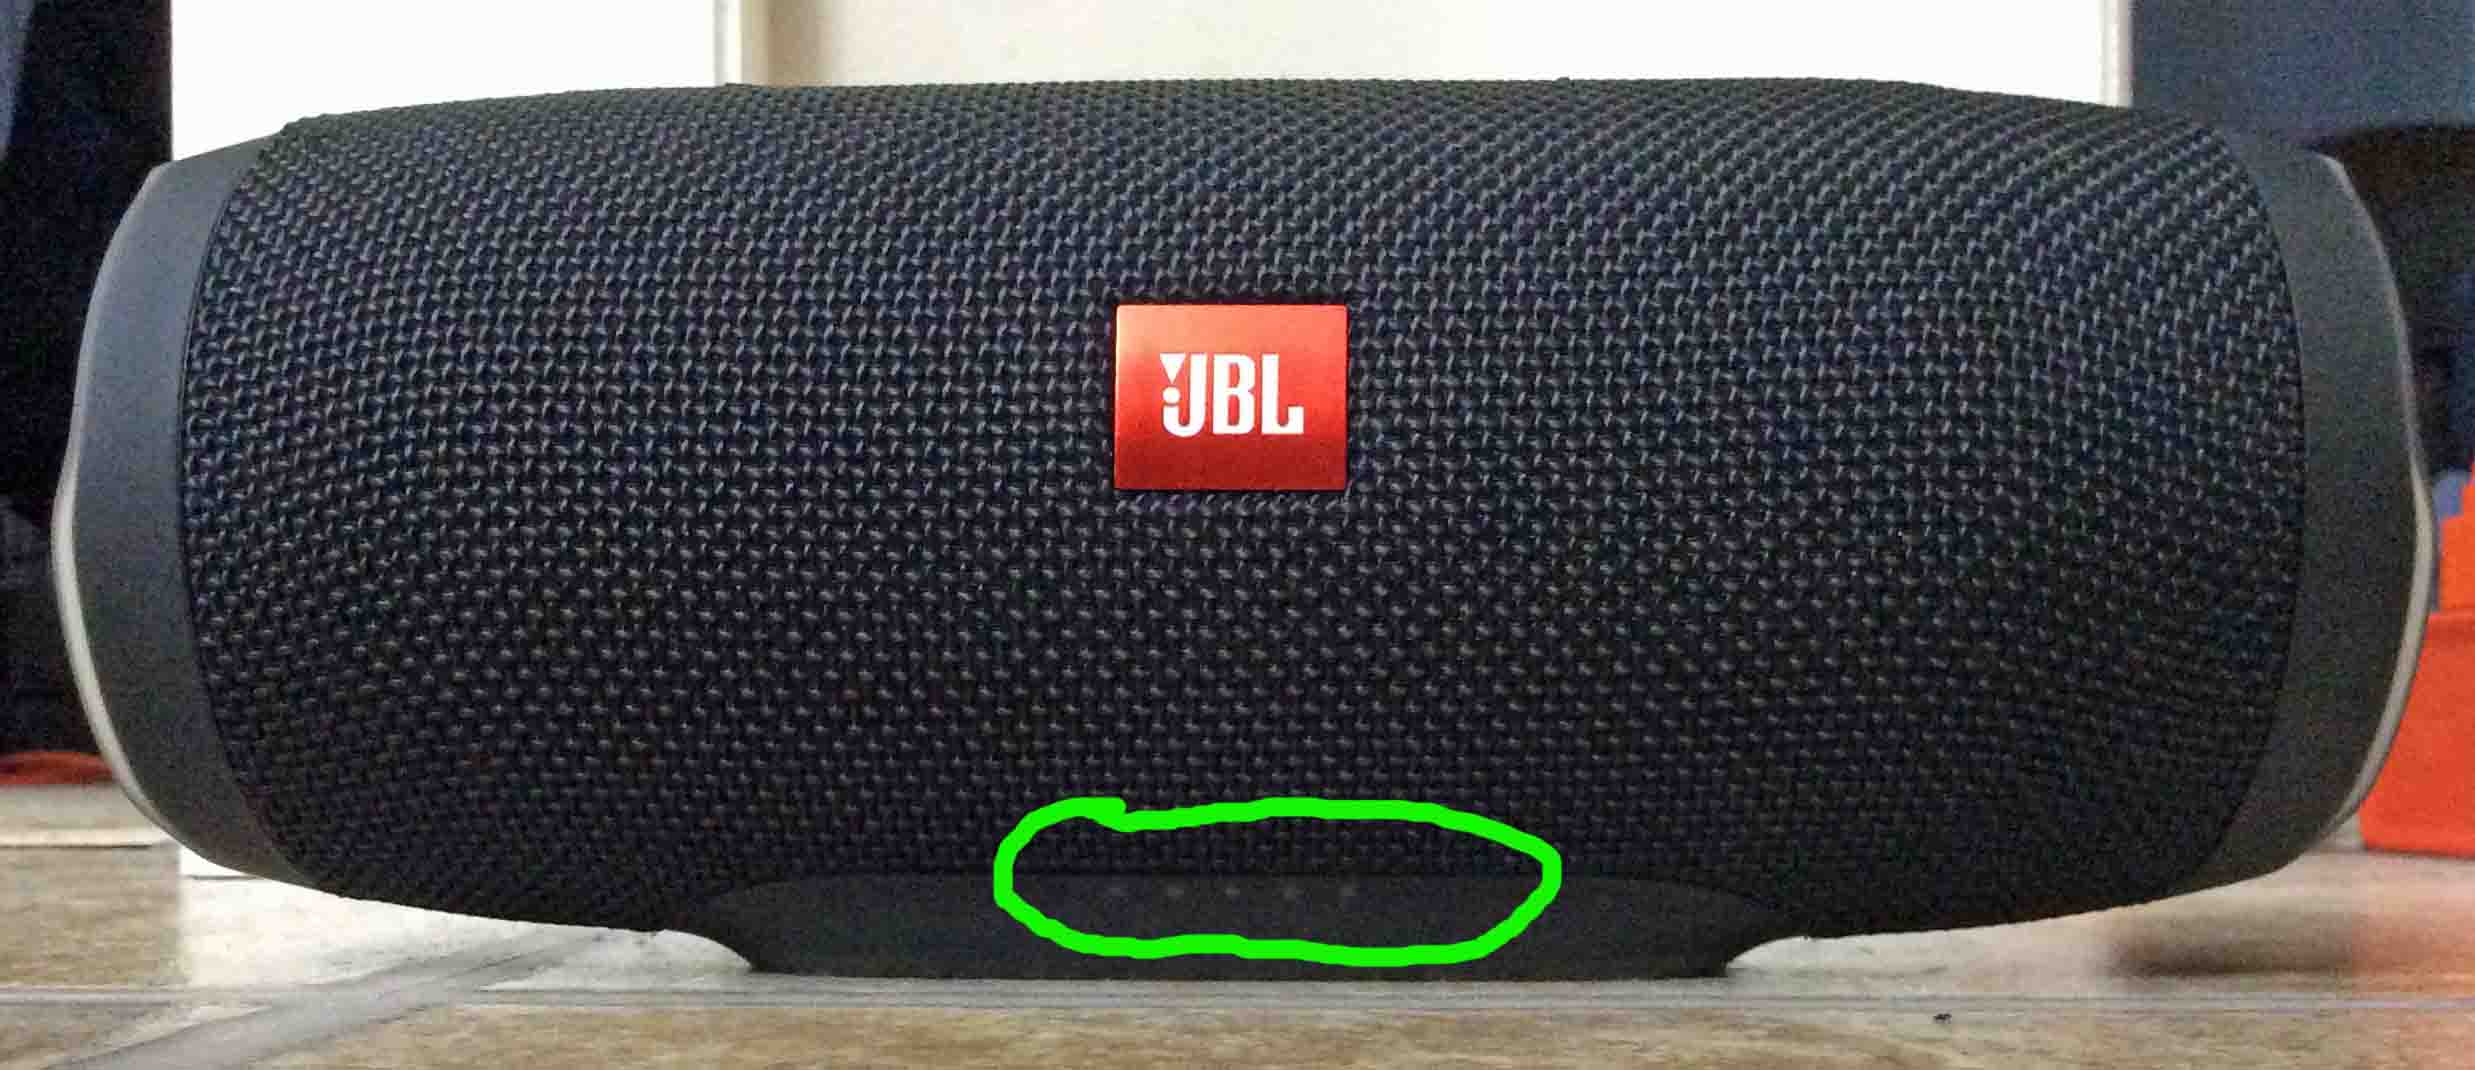 Как включить радио на jbl charge 4? - jbl charge 4